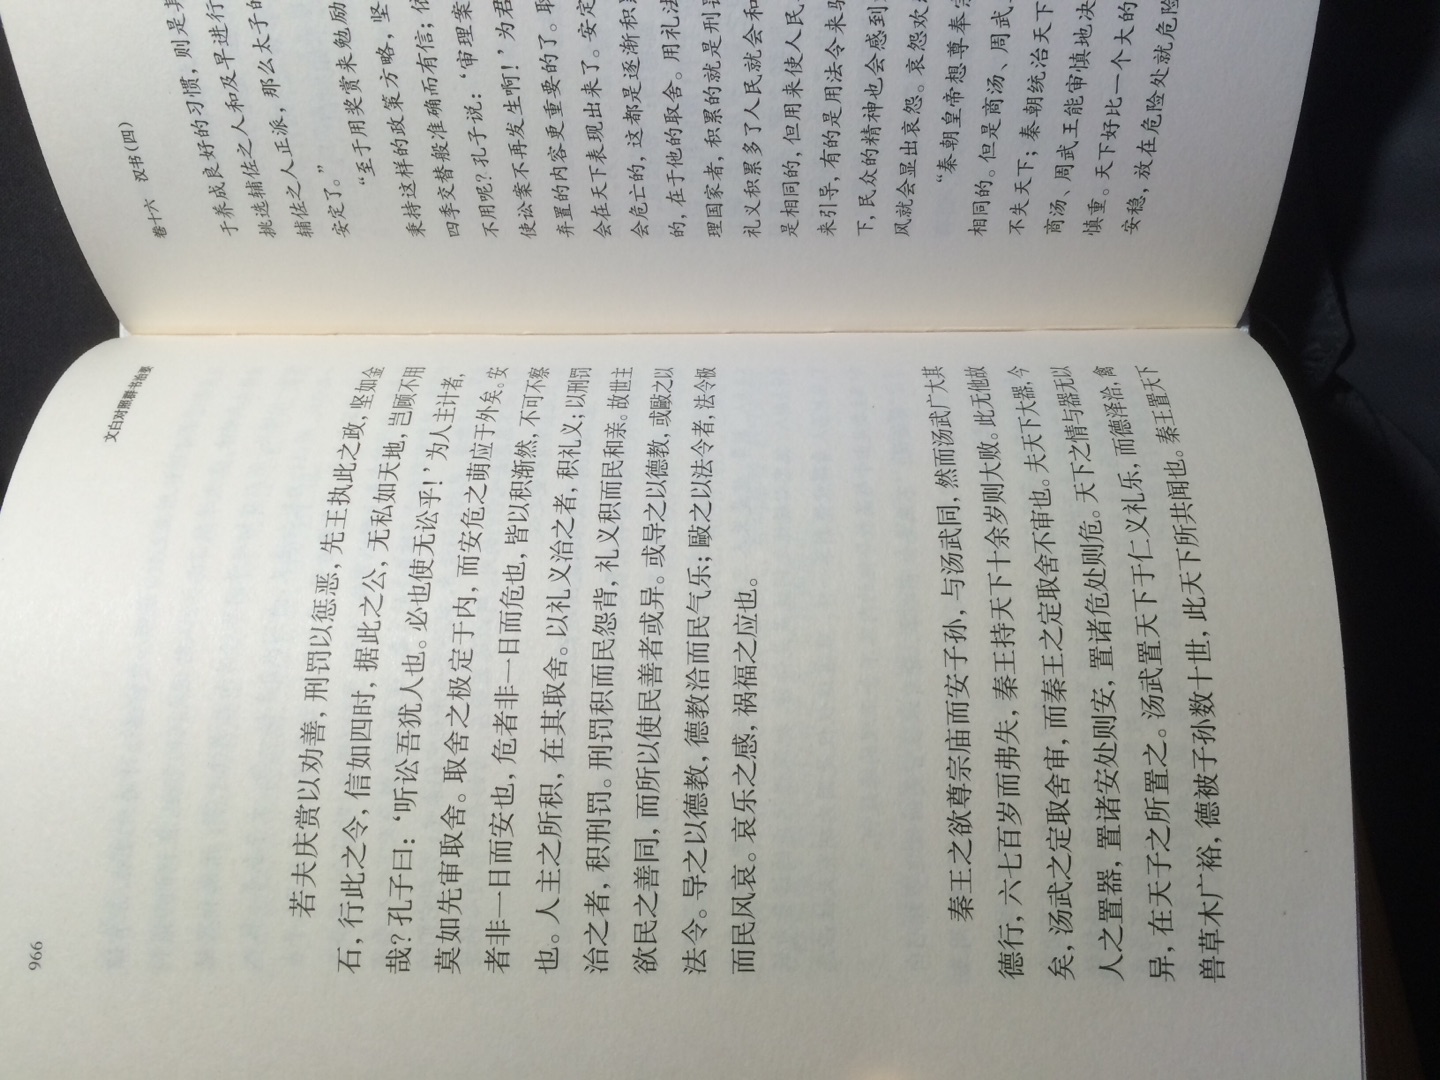 轻型纸线装书，拿在手翻也不觉得重，全文翻译，读起不累。如果把生僻字注个意，这套书就完美了。